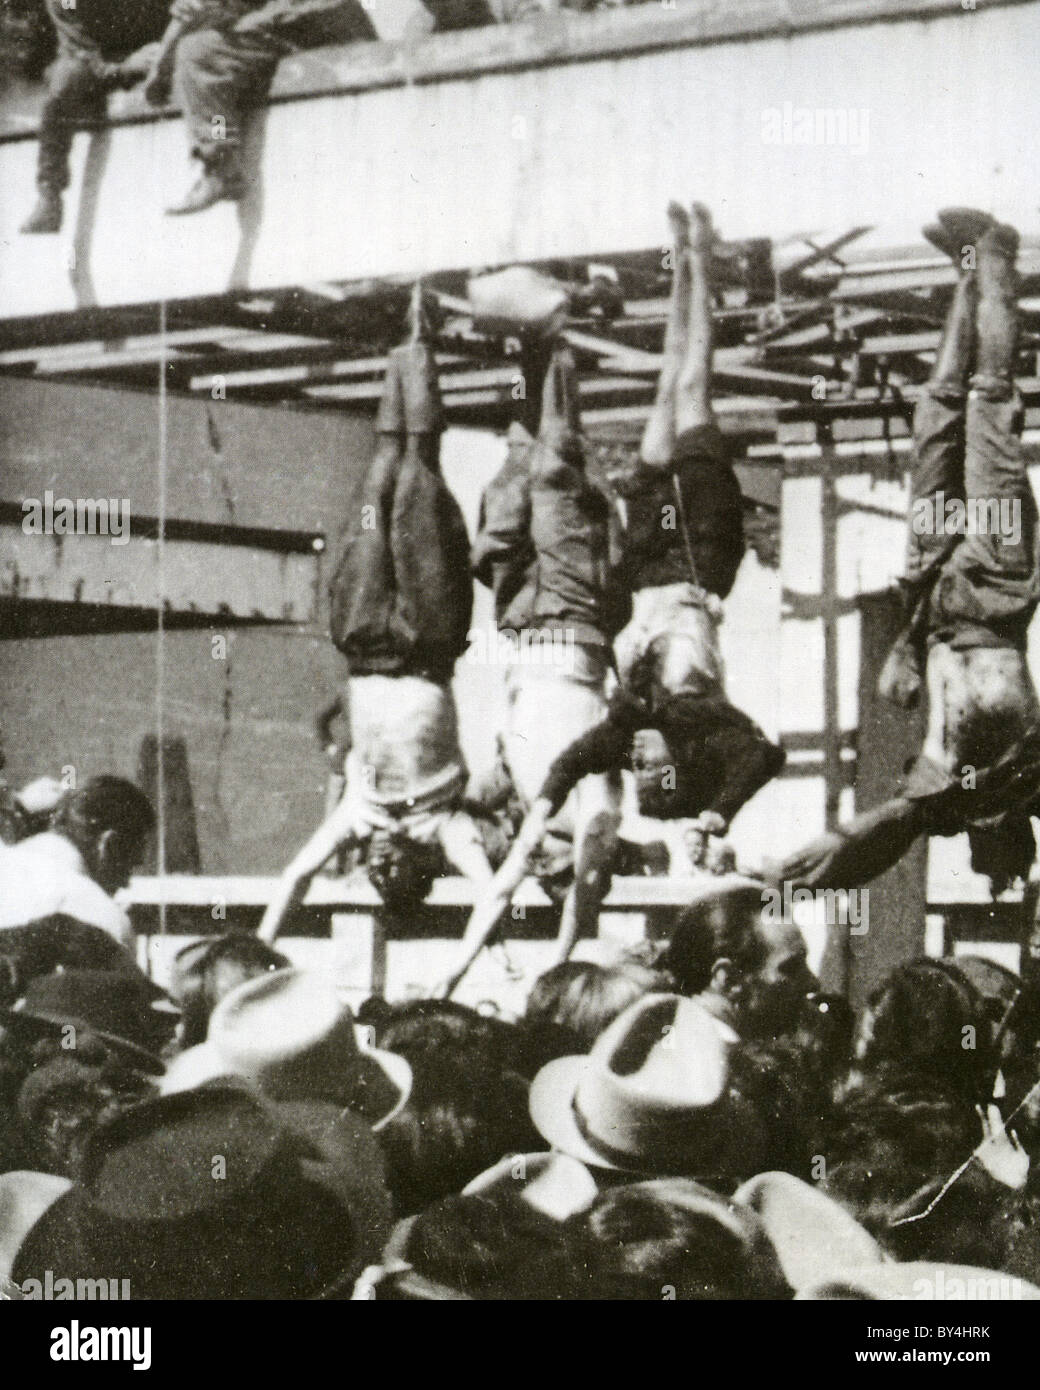 BENITO MUSSOLINI italienische Diktator hängen neben seiner geliebten Claretta Petacci, Mailand, 29. April 1945. Siehe Beschreibung unten Stockfoto